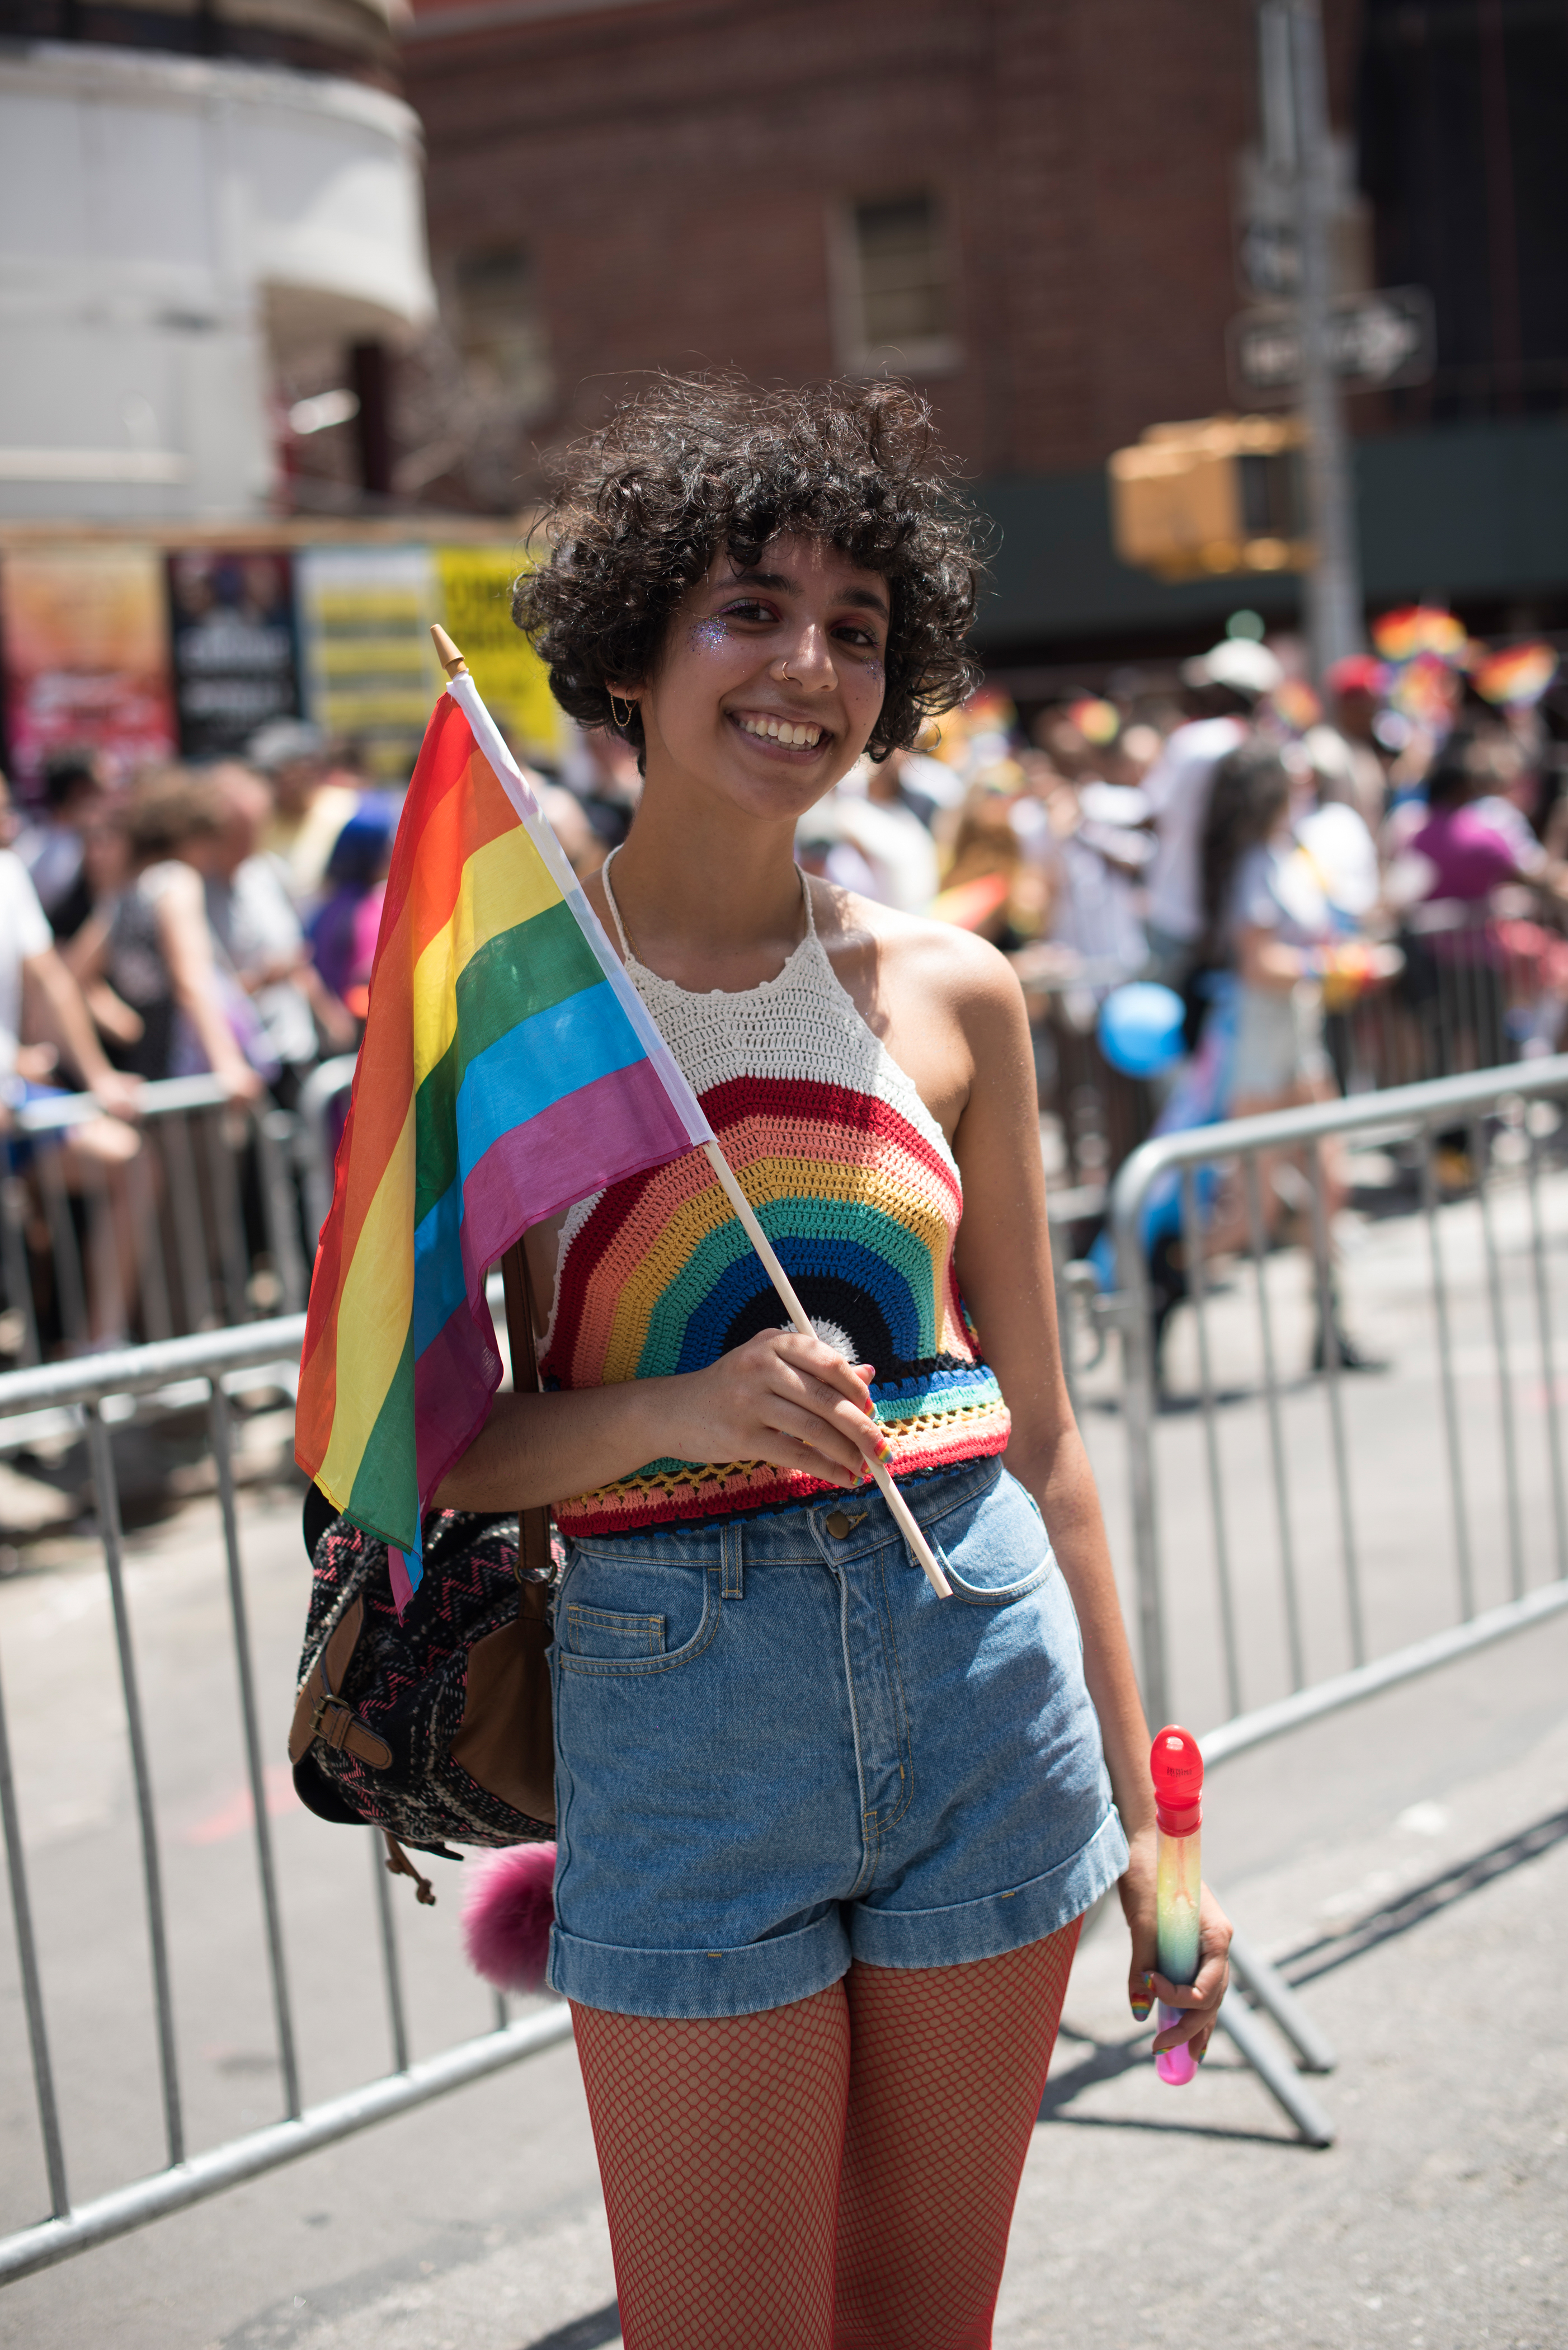 Individual at at Pride Event holding LGBTQ Flag